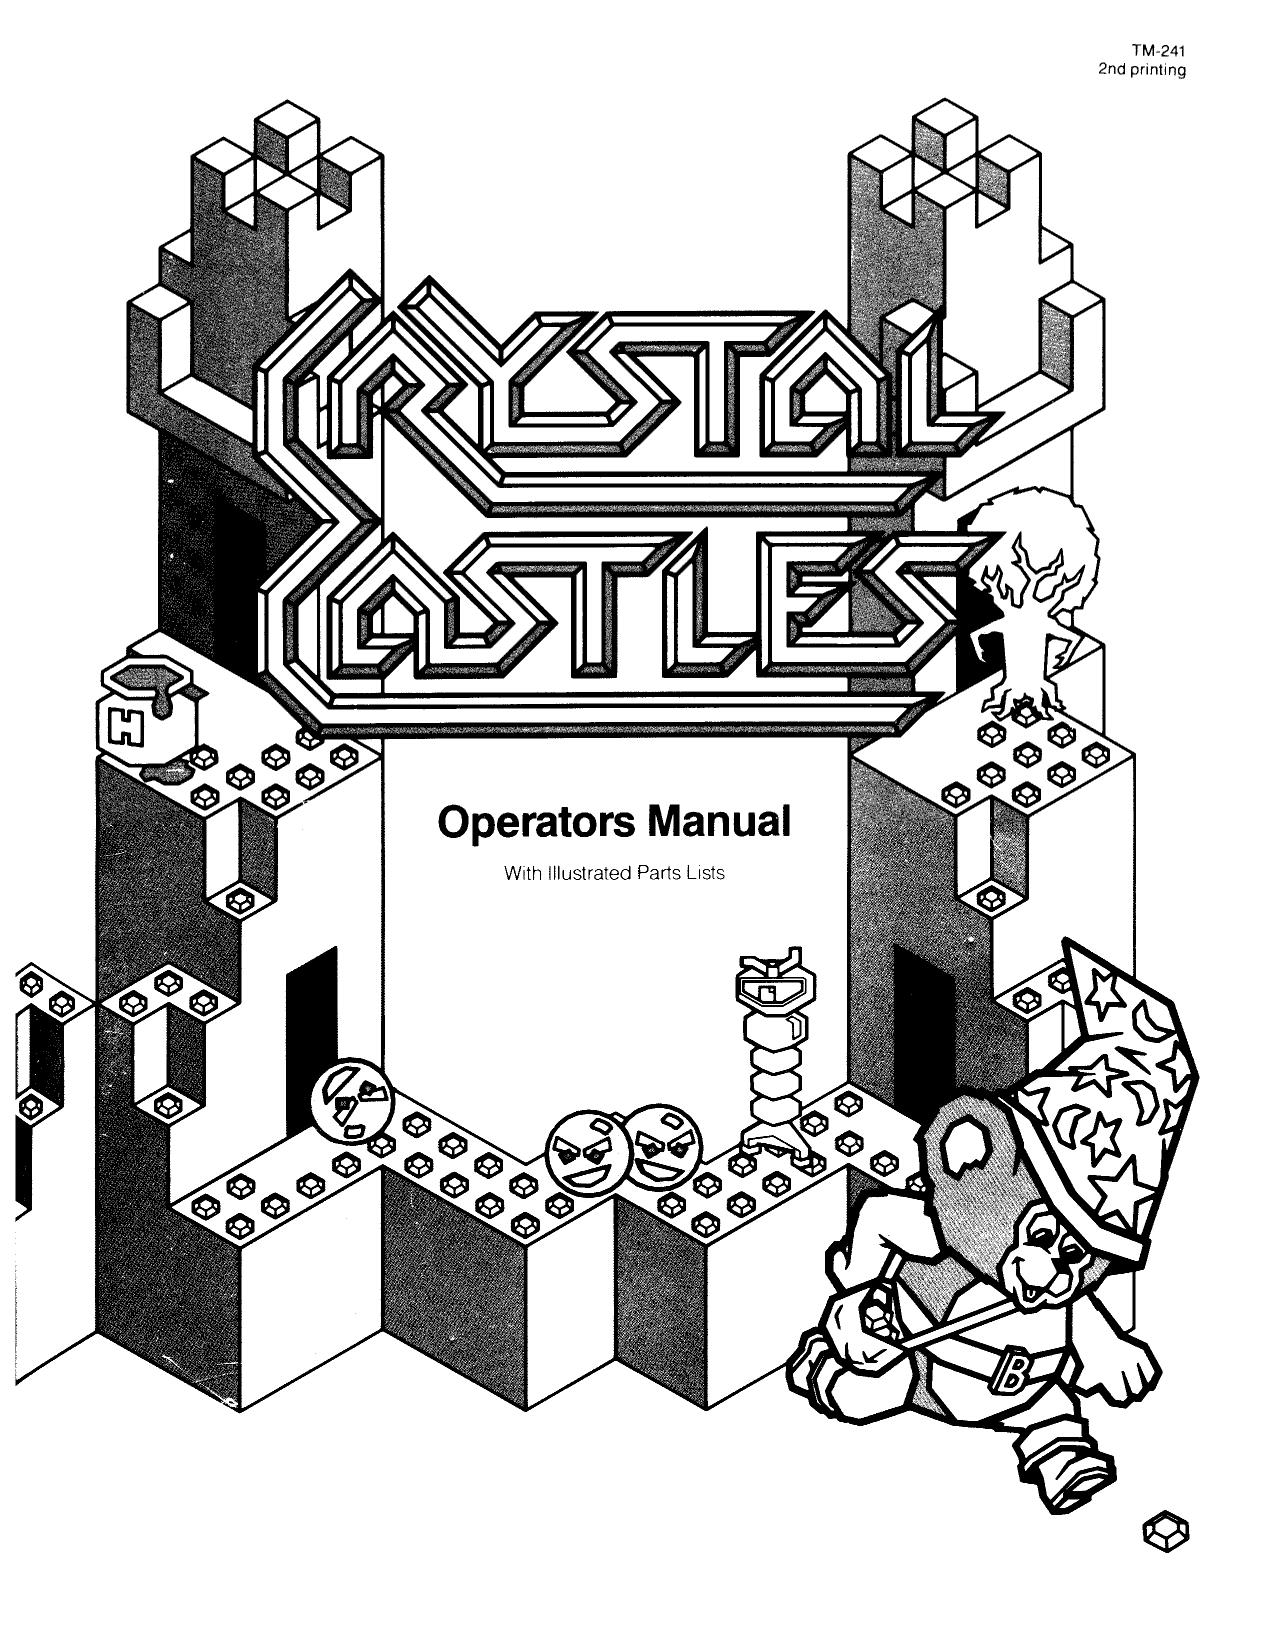 Crystal Castles TM-241 2nd Printing